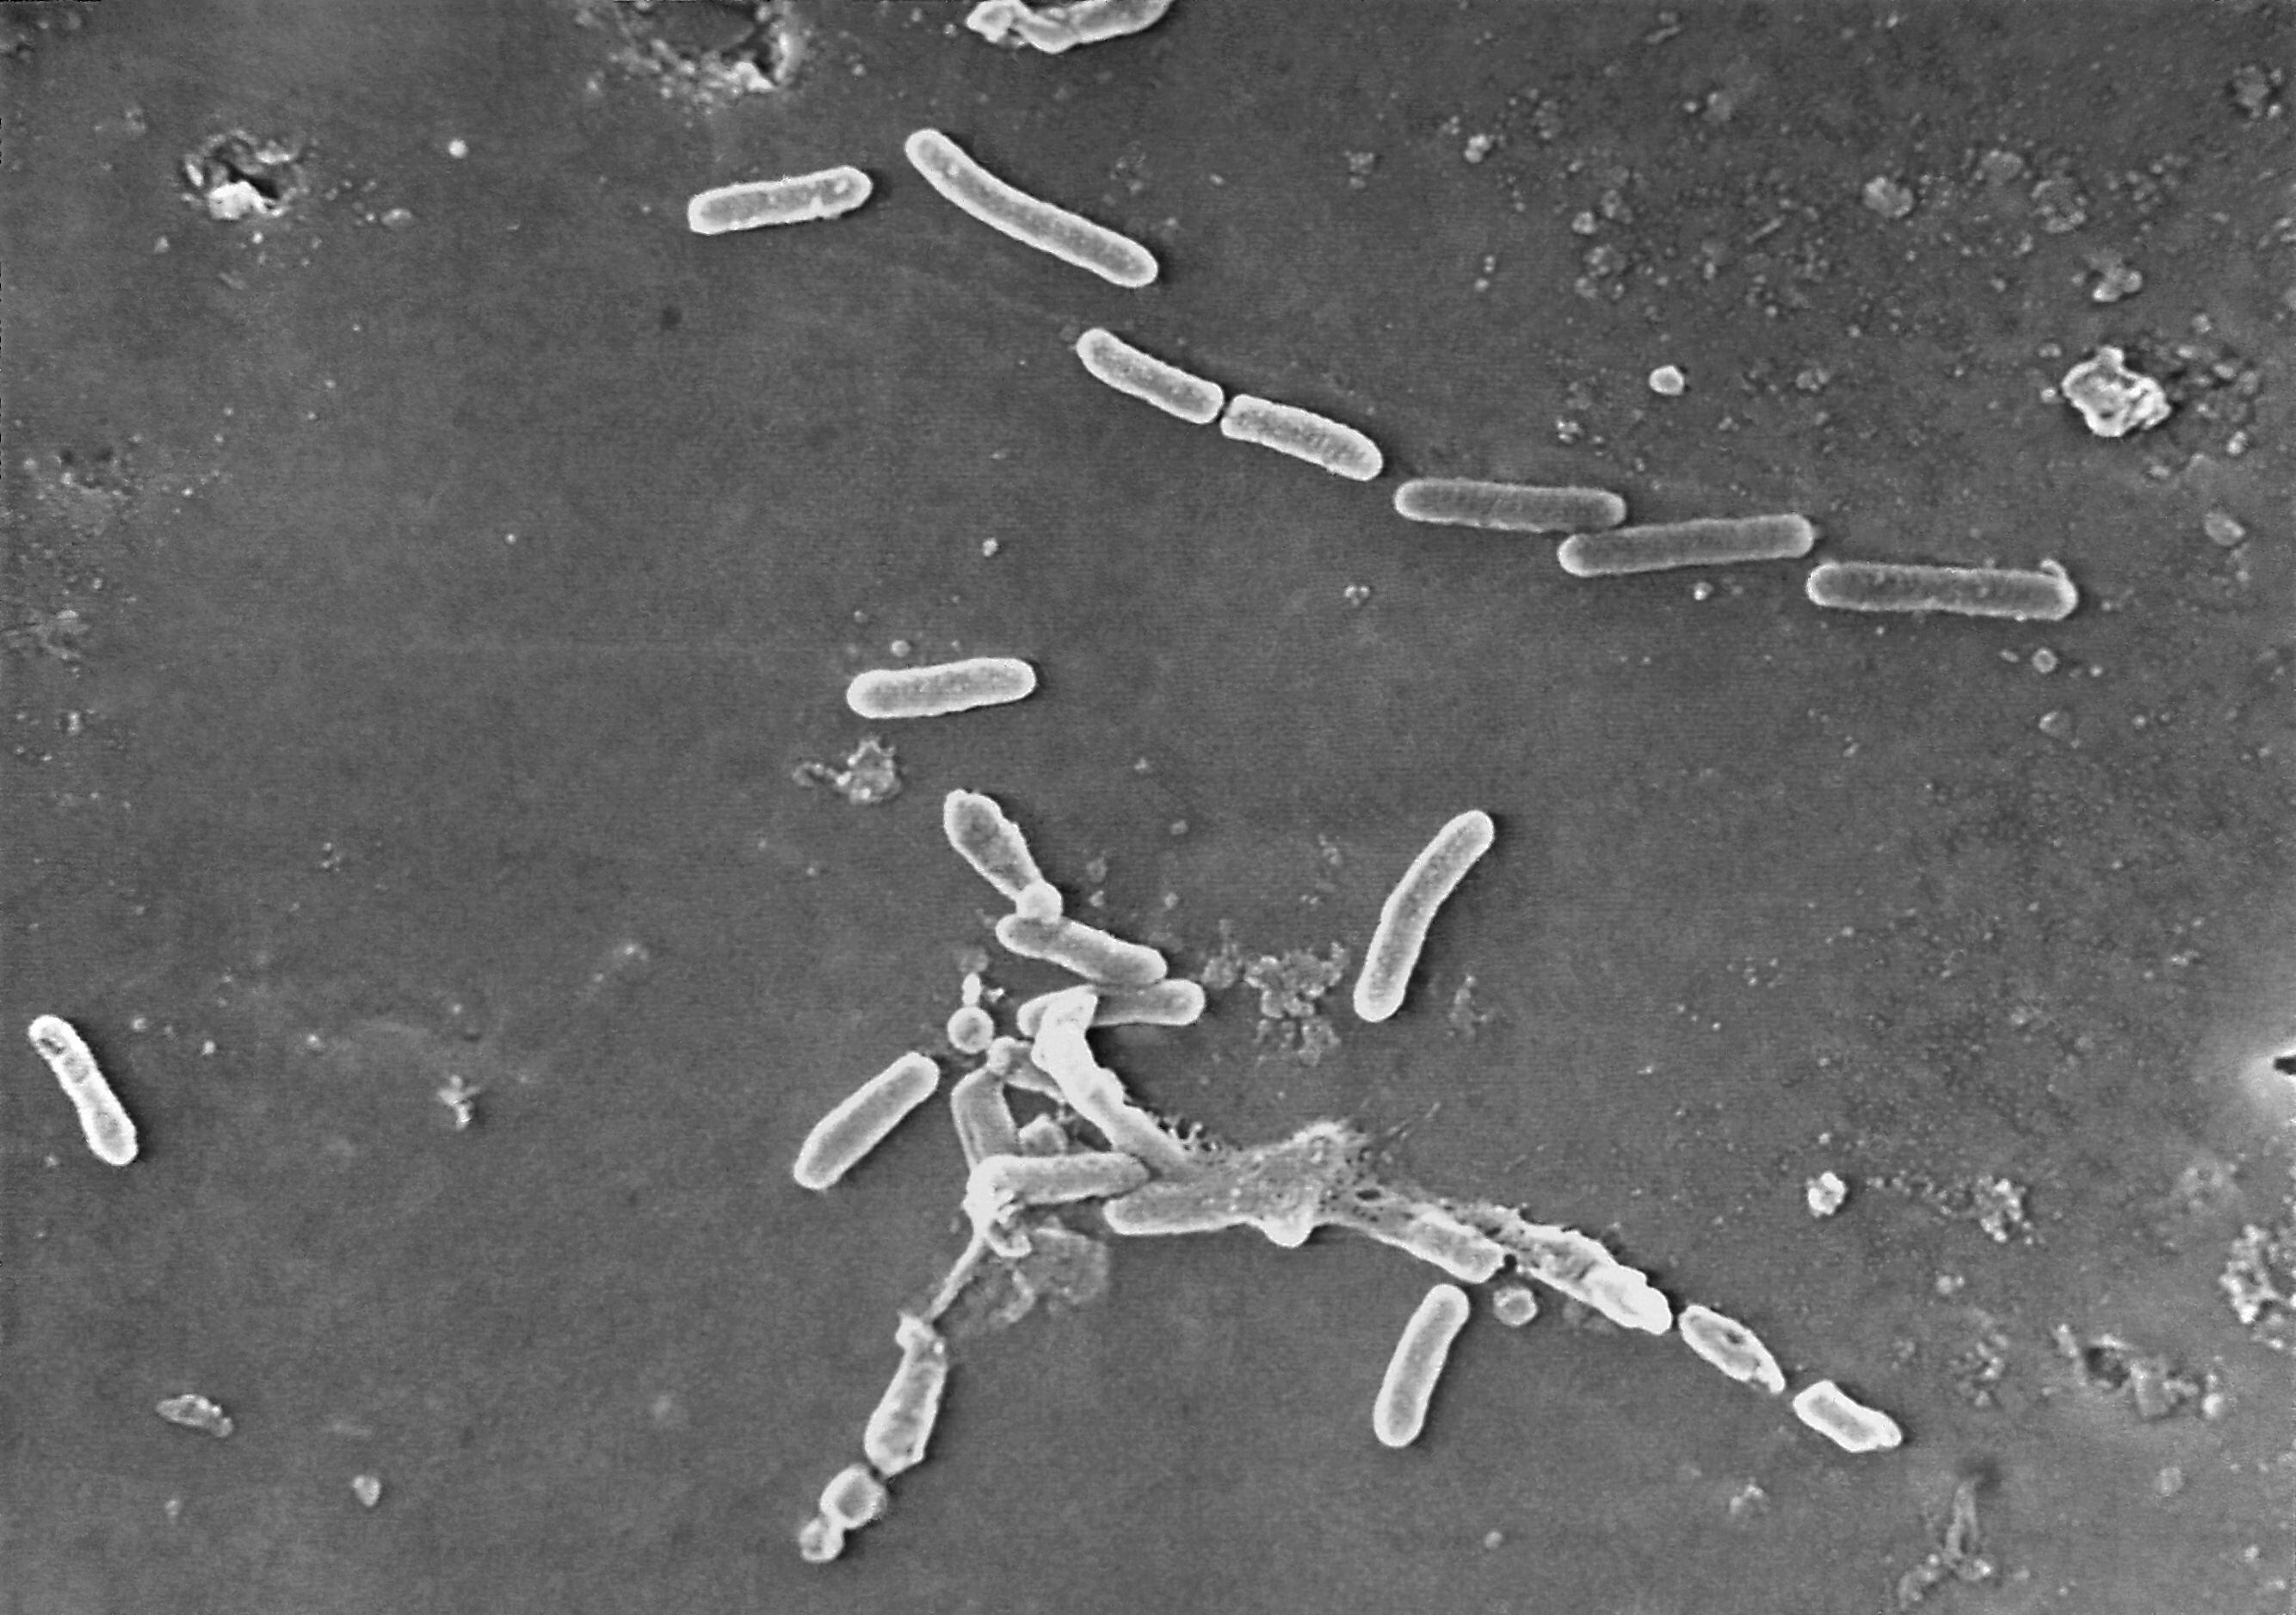  Aumentó el nivel de resistencia en el caso de algunas bacterias de ‘campylobacter’ que mantuvieron una tendencia creciente en la resistencia al antibiótico ciprofloxacina. (Janice Haney Carr/CDC vía AP, Archivo)